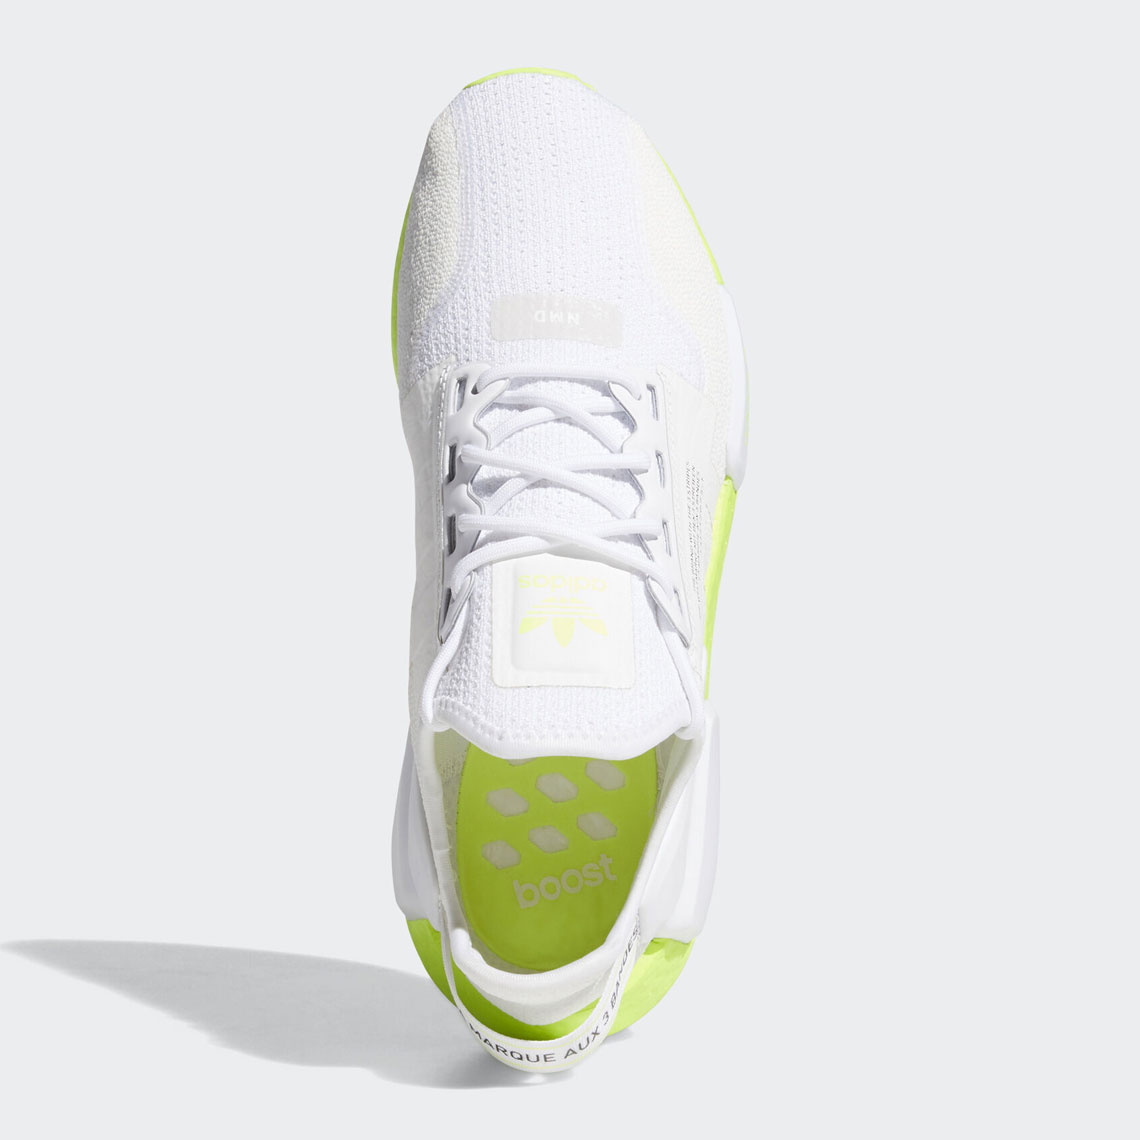 NMD R1 STLT PK White adidas ORIGINALS Mens Sneaker